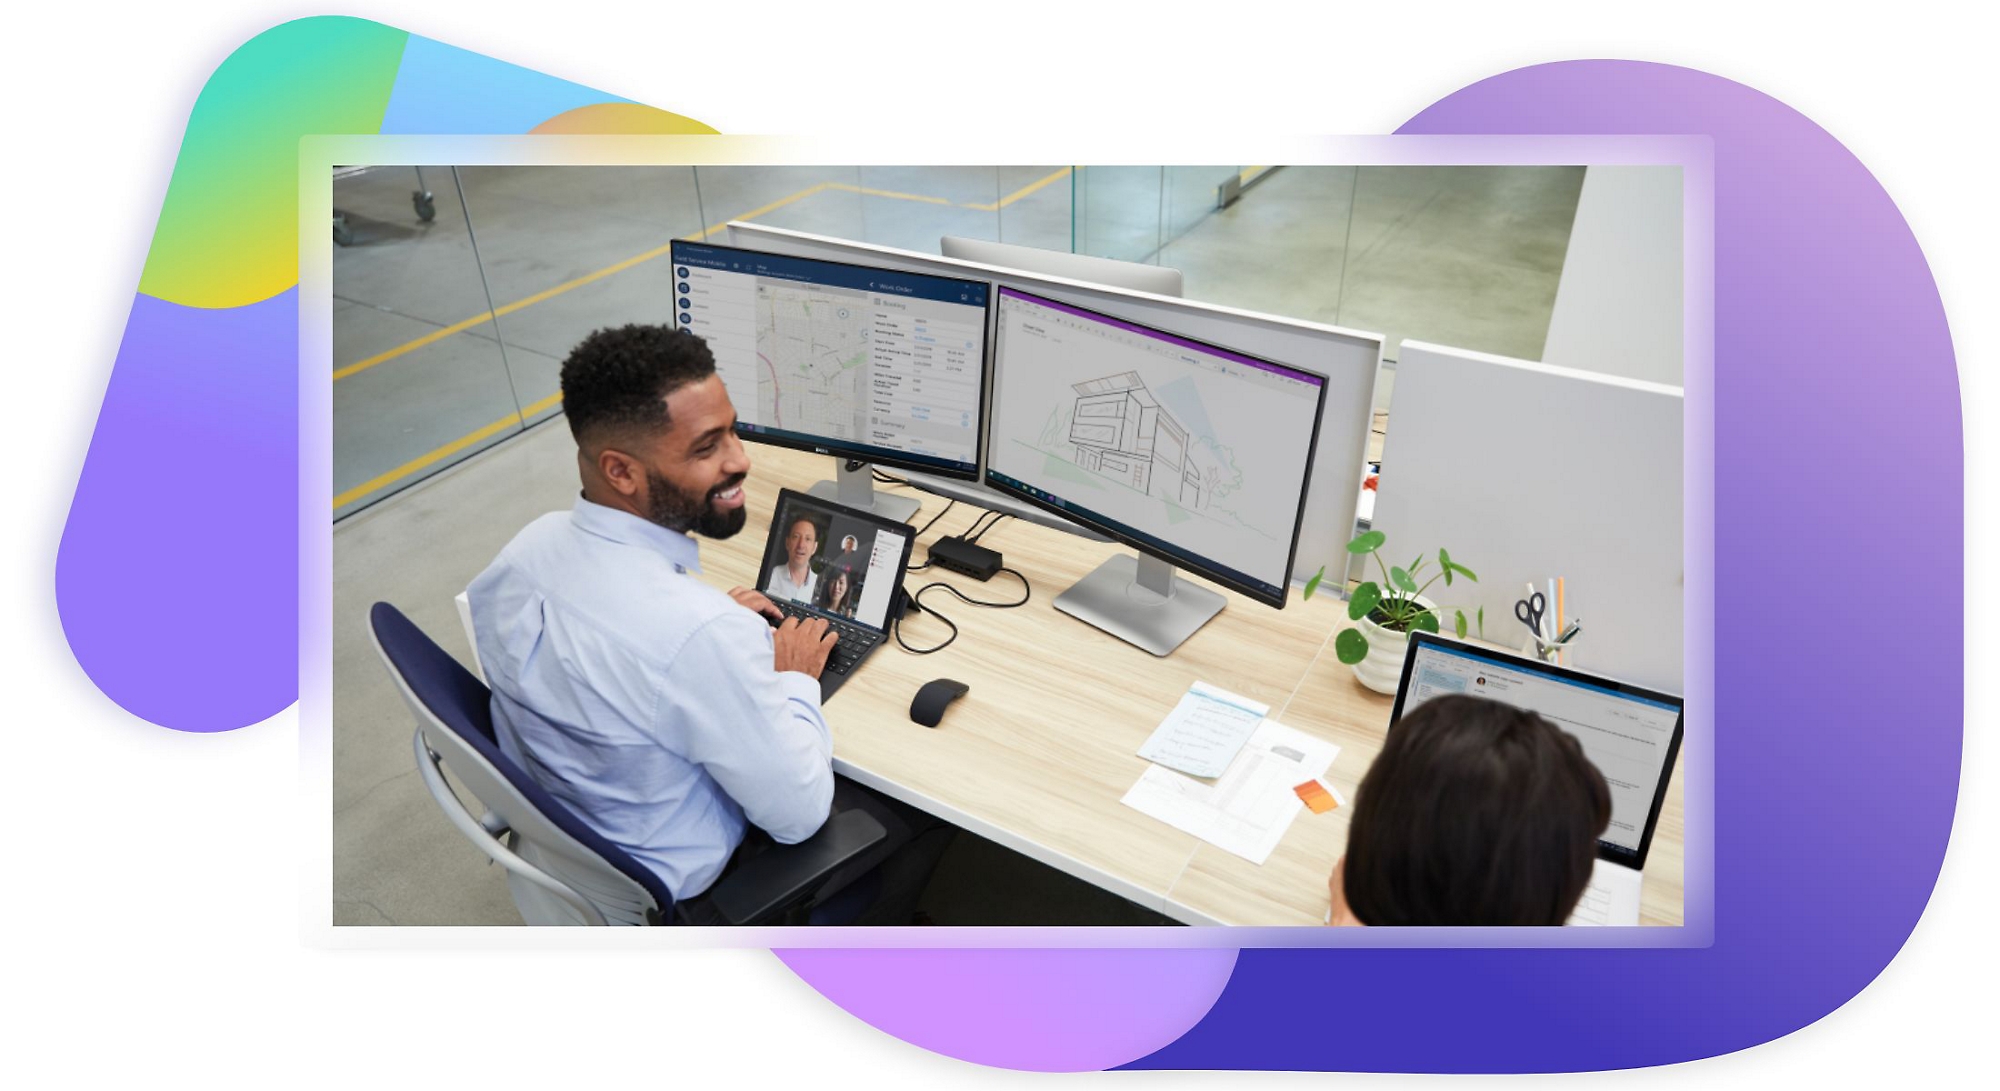 Một người đang làm việc trên máy tính xách tay và các màn hình máy tính tại bàn làm việc, đồng thời trò chuyện với đồng nghiệp ở bên cạnh.